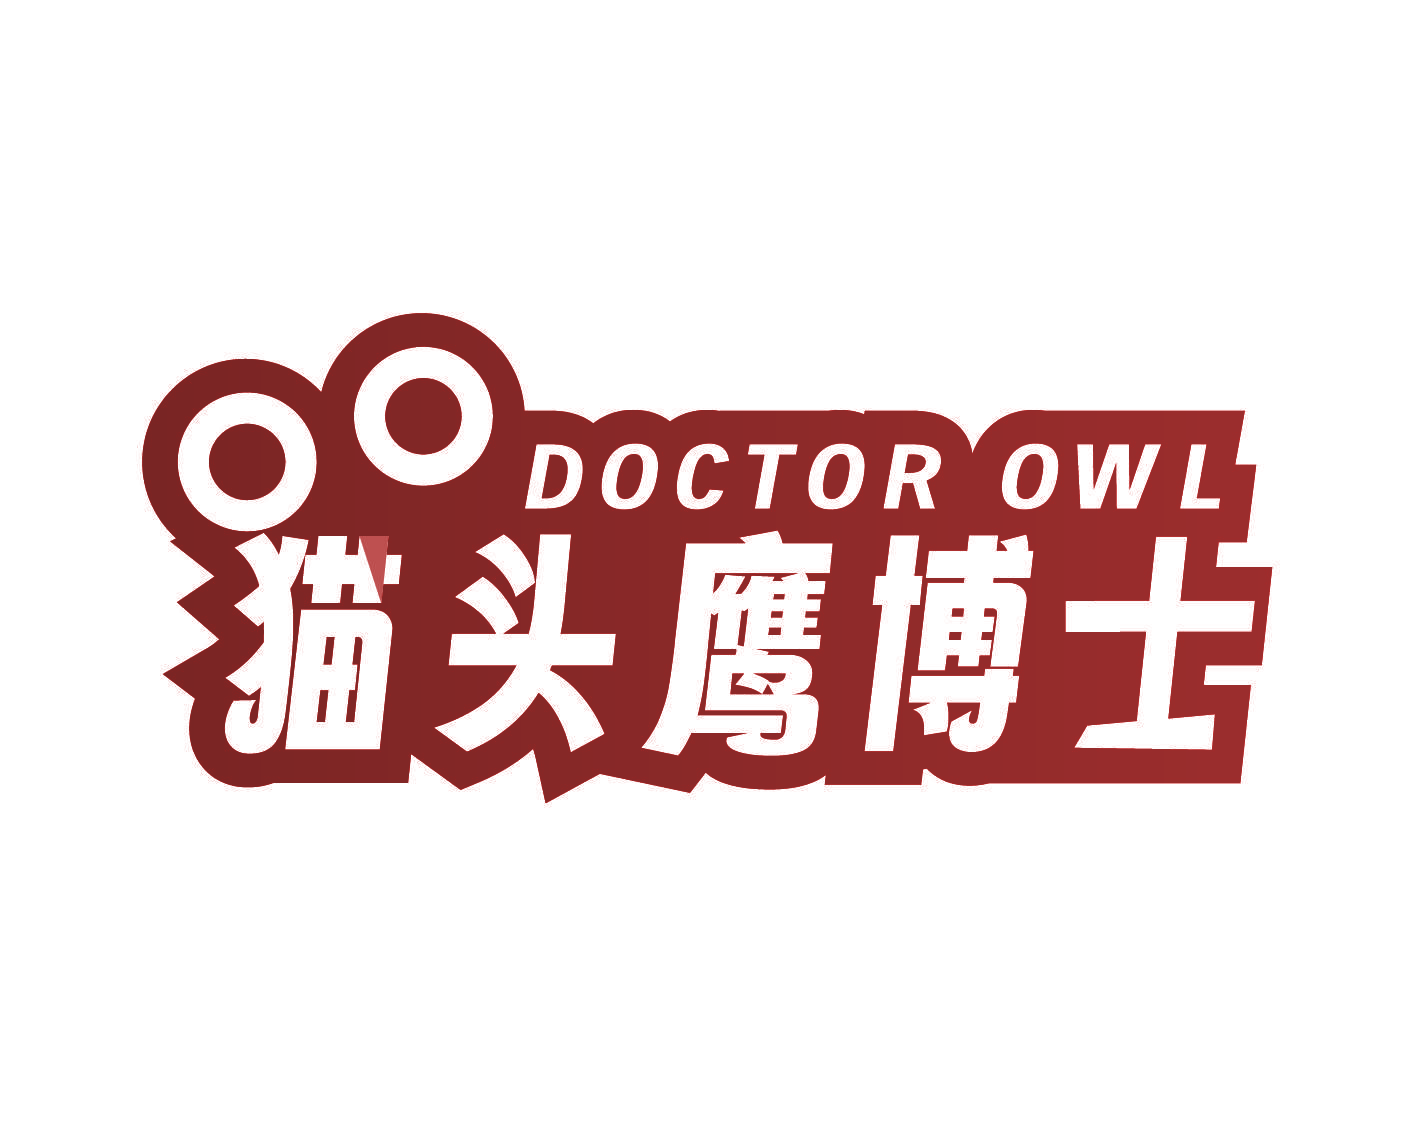 猫头鹰博士 DOCTOR OWL